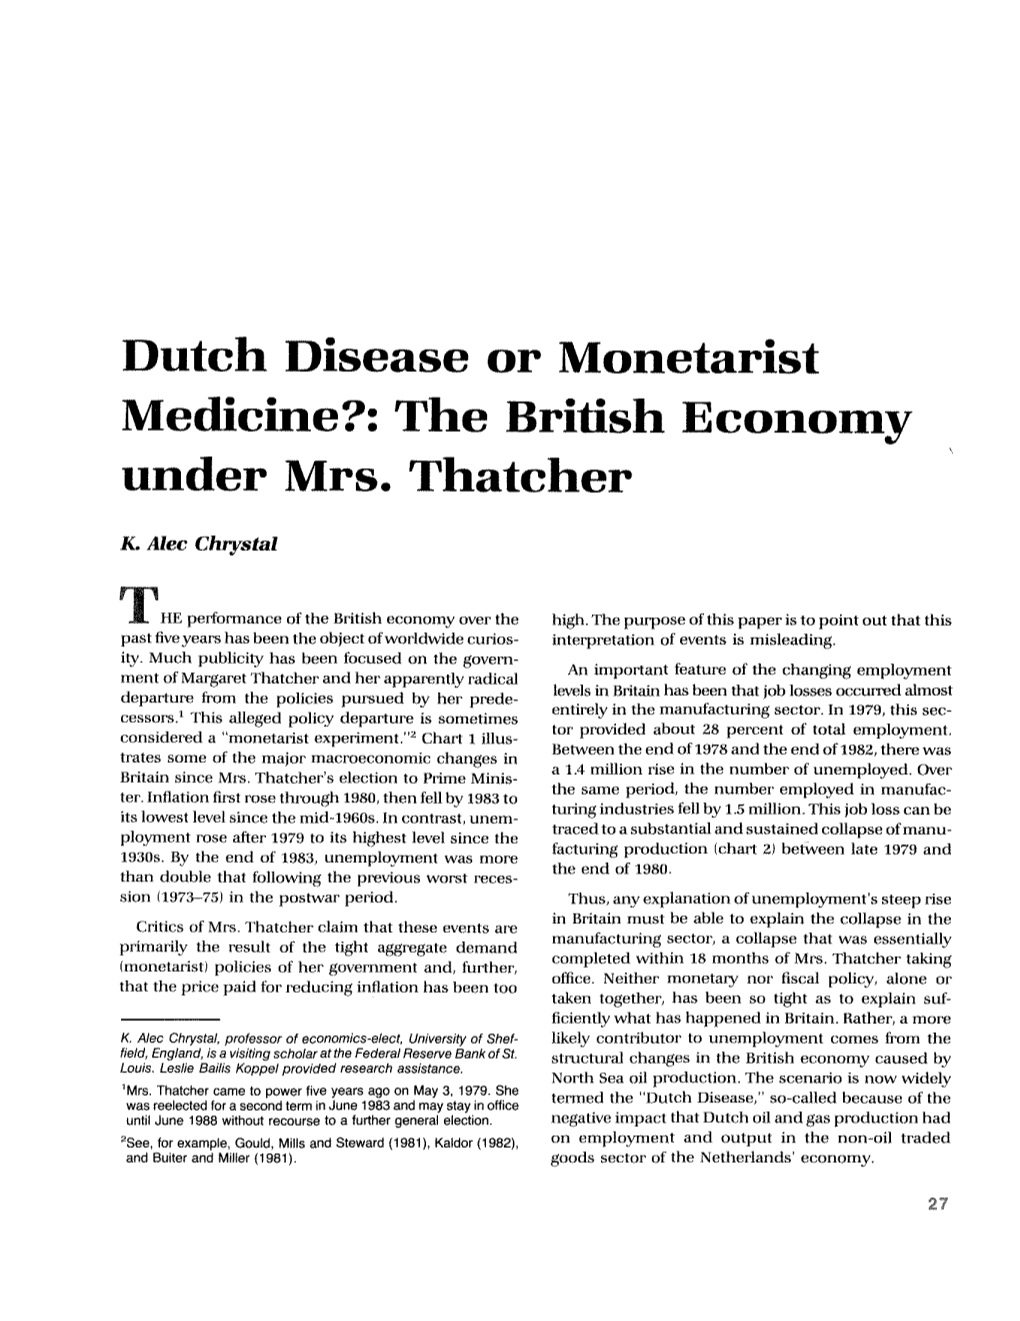 Dutch Disease Or Monetarist Medicine?: the British Economy Under Mrs